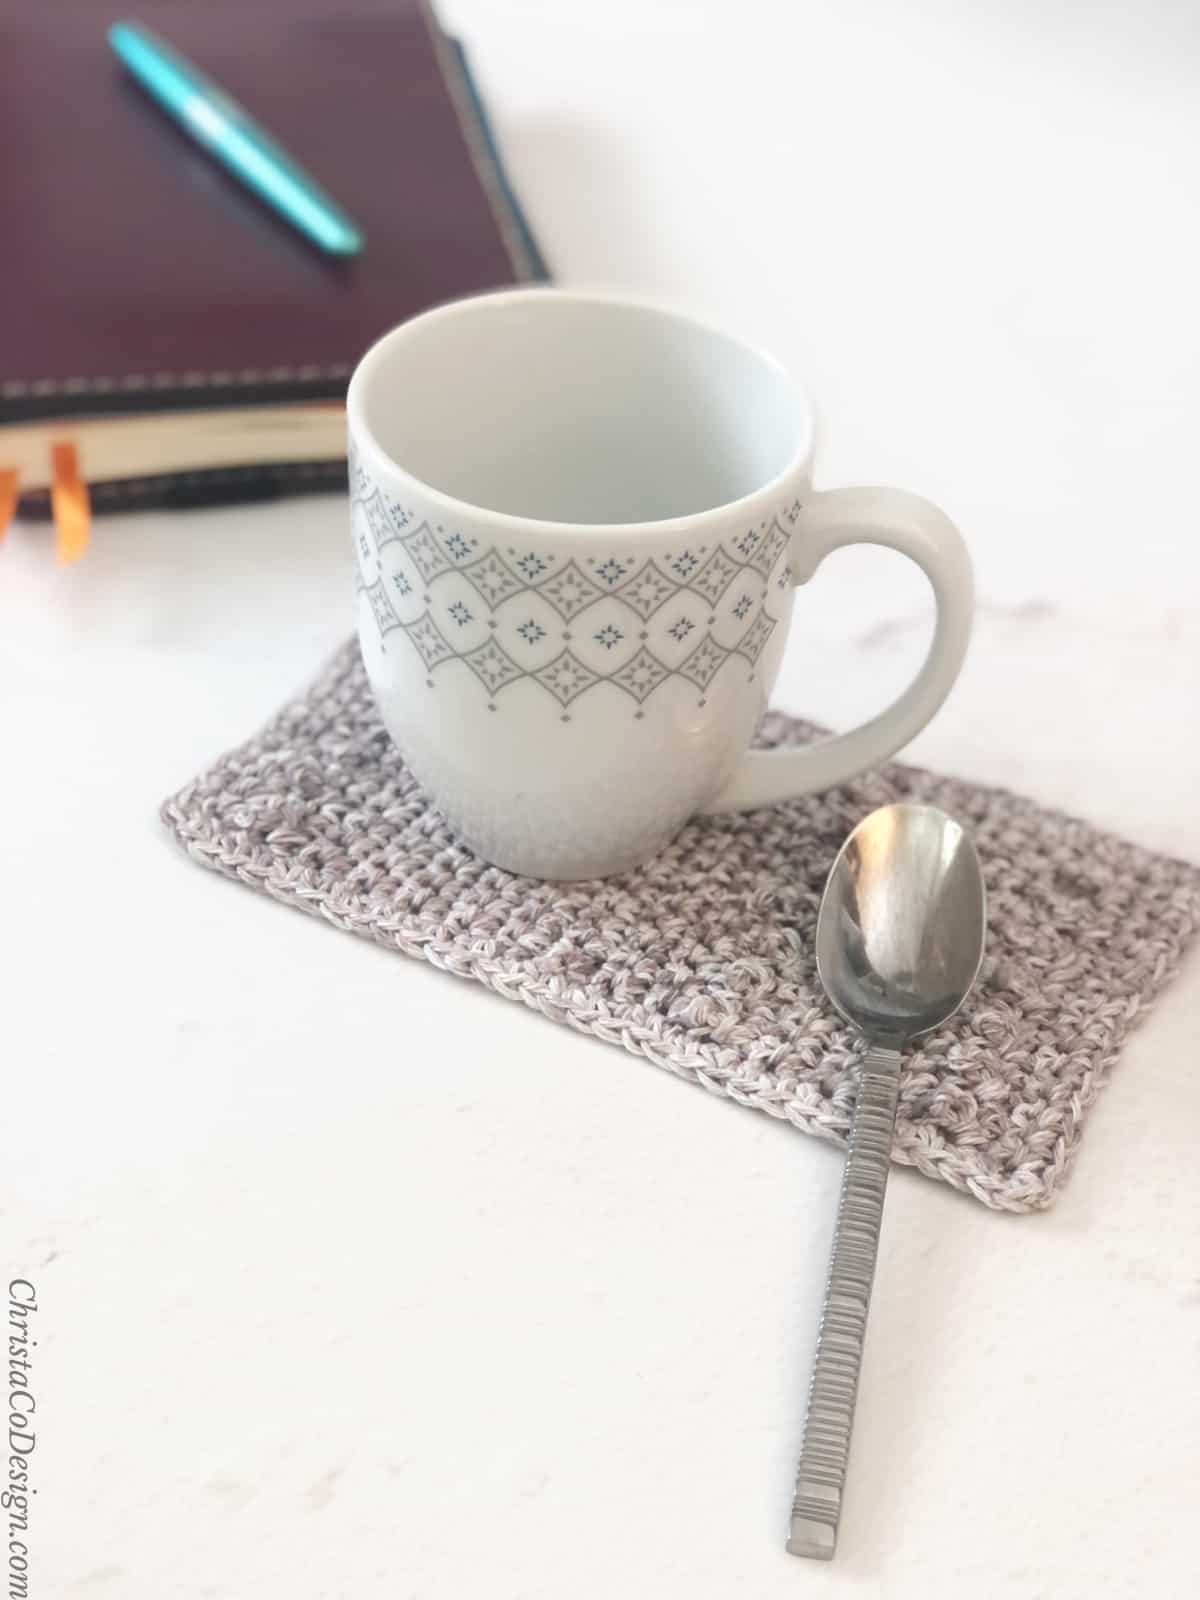 Coffee mug on grey crochet mug rug with spoon area and notebook on table.